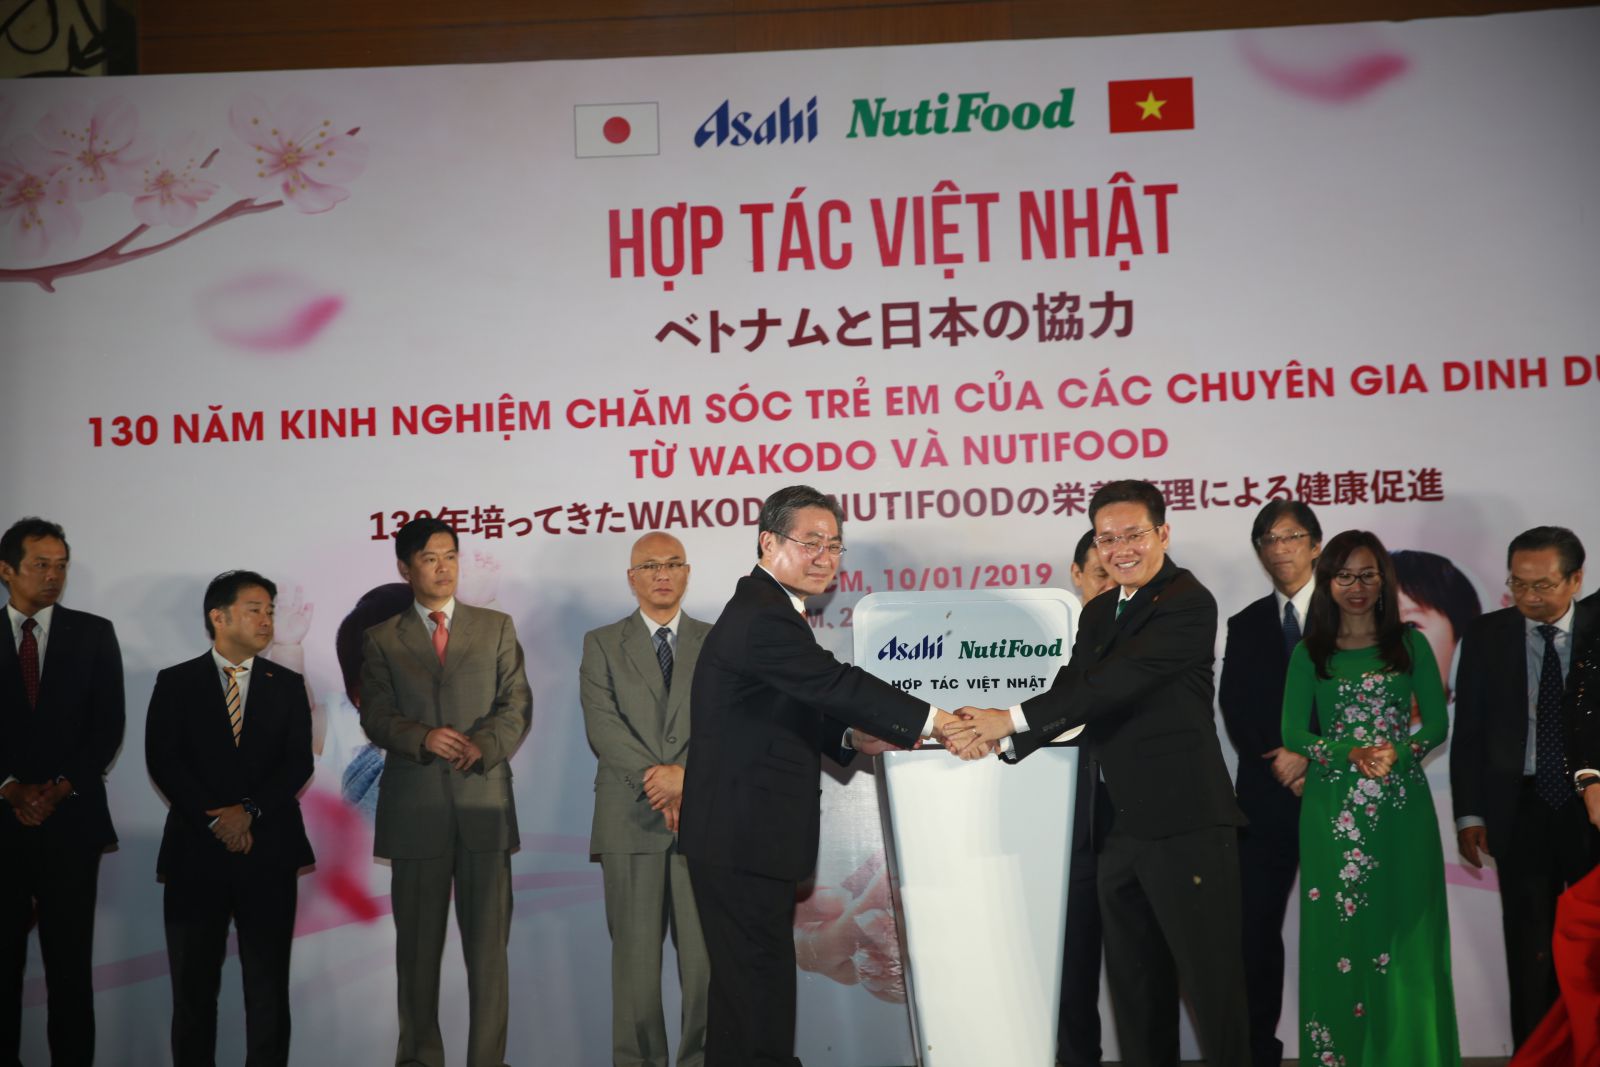 Asahi- NutiFood với hơn 130 năm kinh nghiệm là chìa khóa để xây dựng một thể hệ tương lai tốt đẹp cho trẻ em Việt Nam.